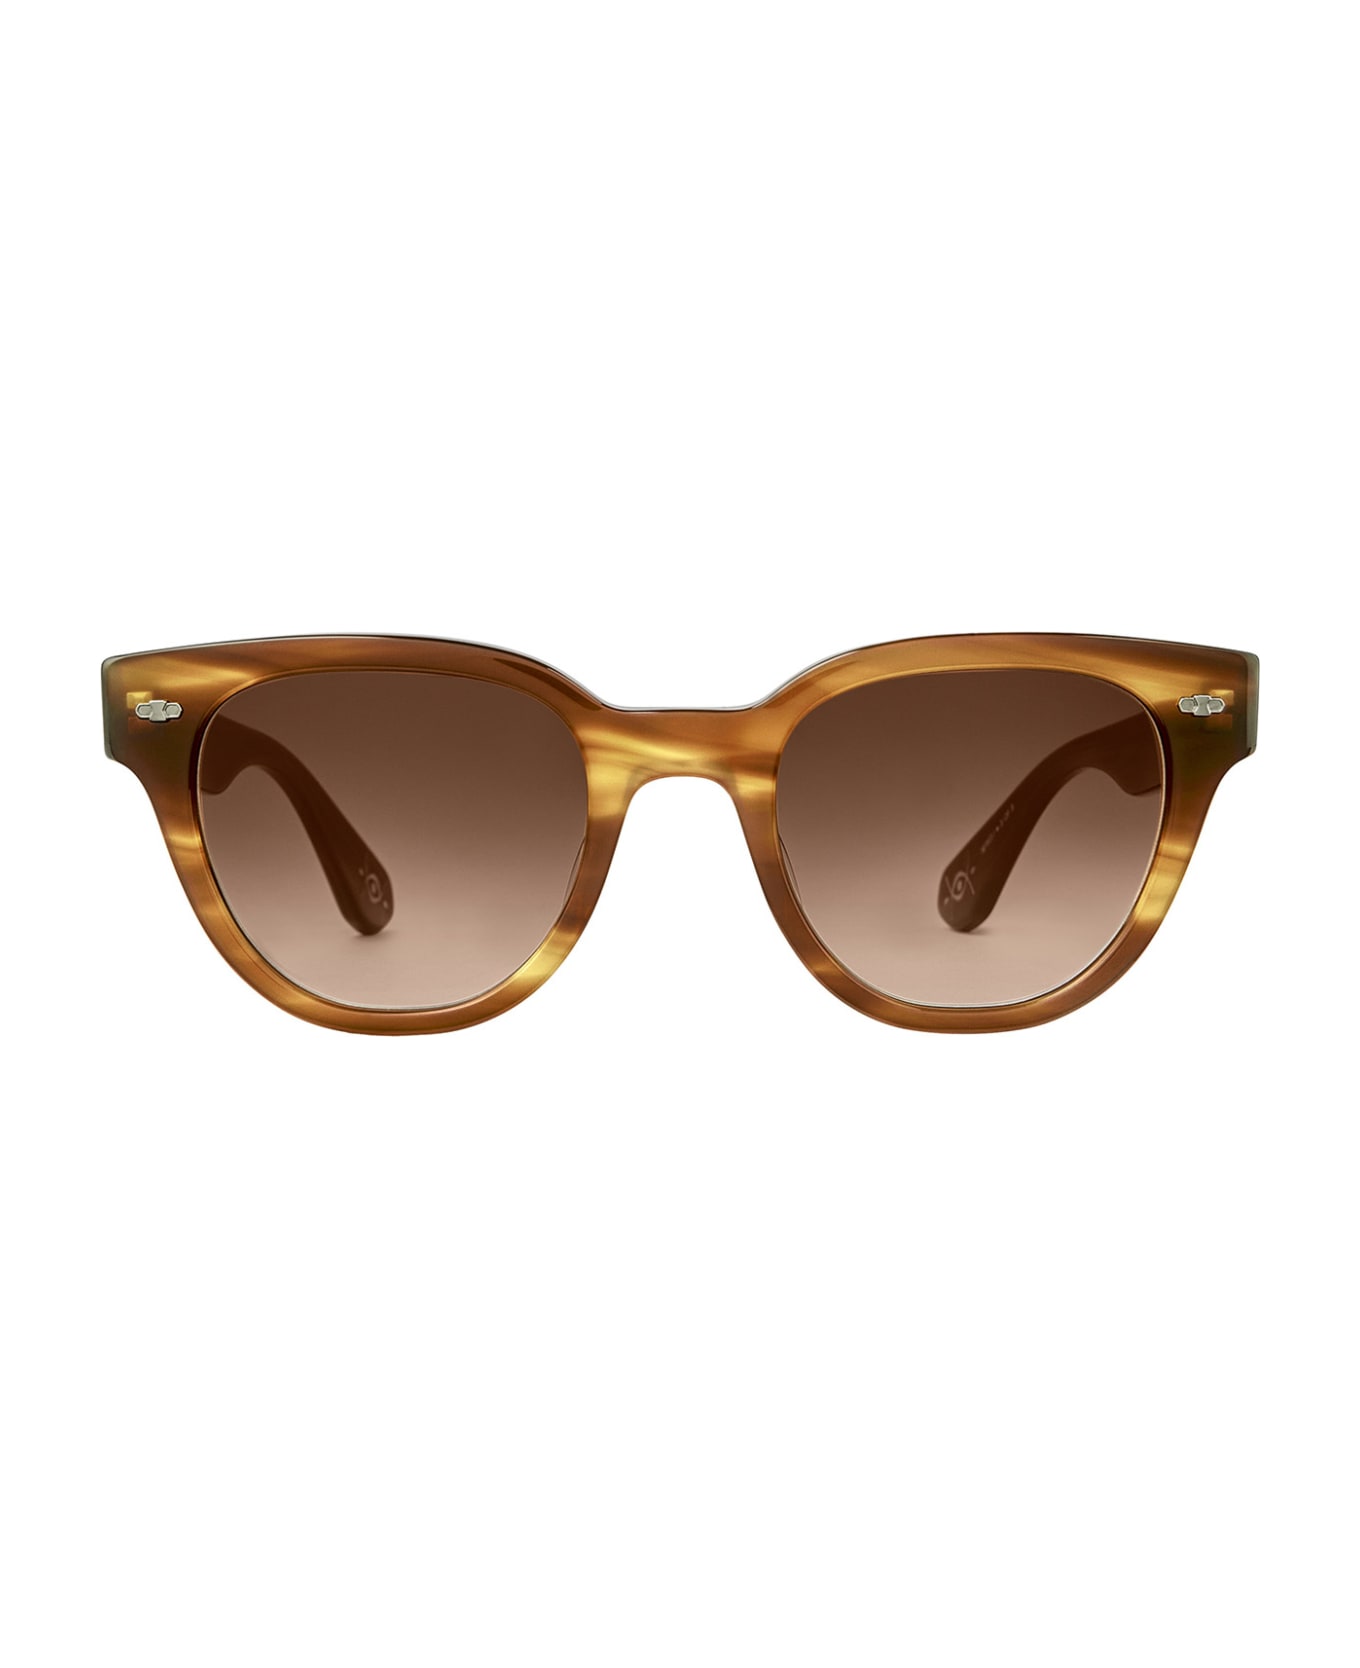 Mr. Leight Jane S Beachwood-white Gold/saturn Gradient Sunglasses - Beachwood-White Gold/Saturn Gradient